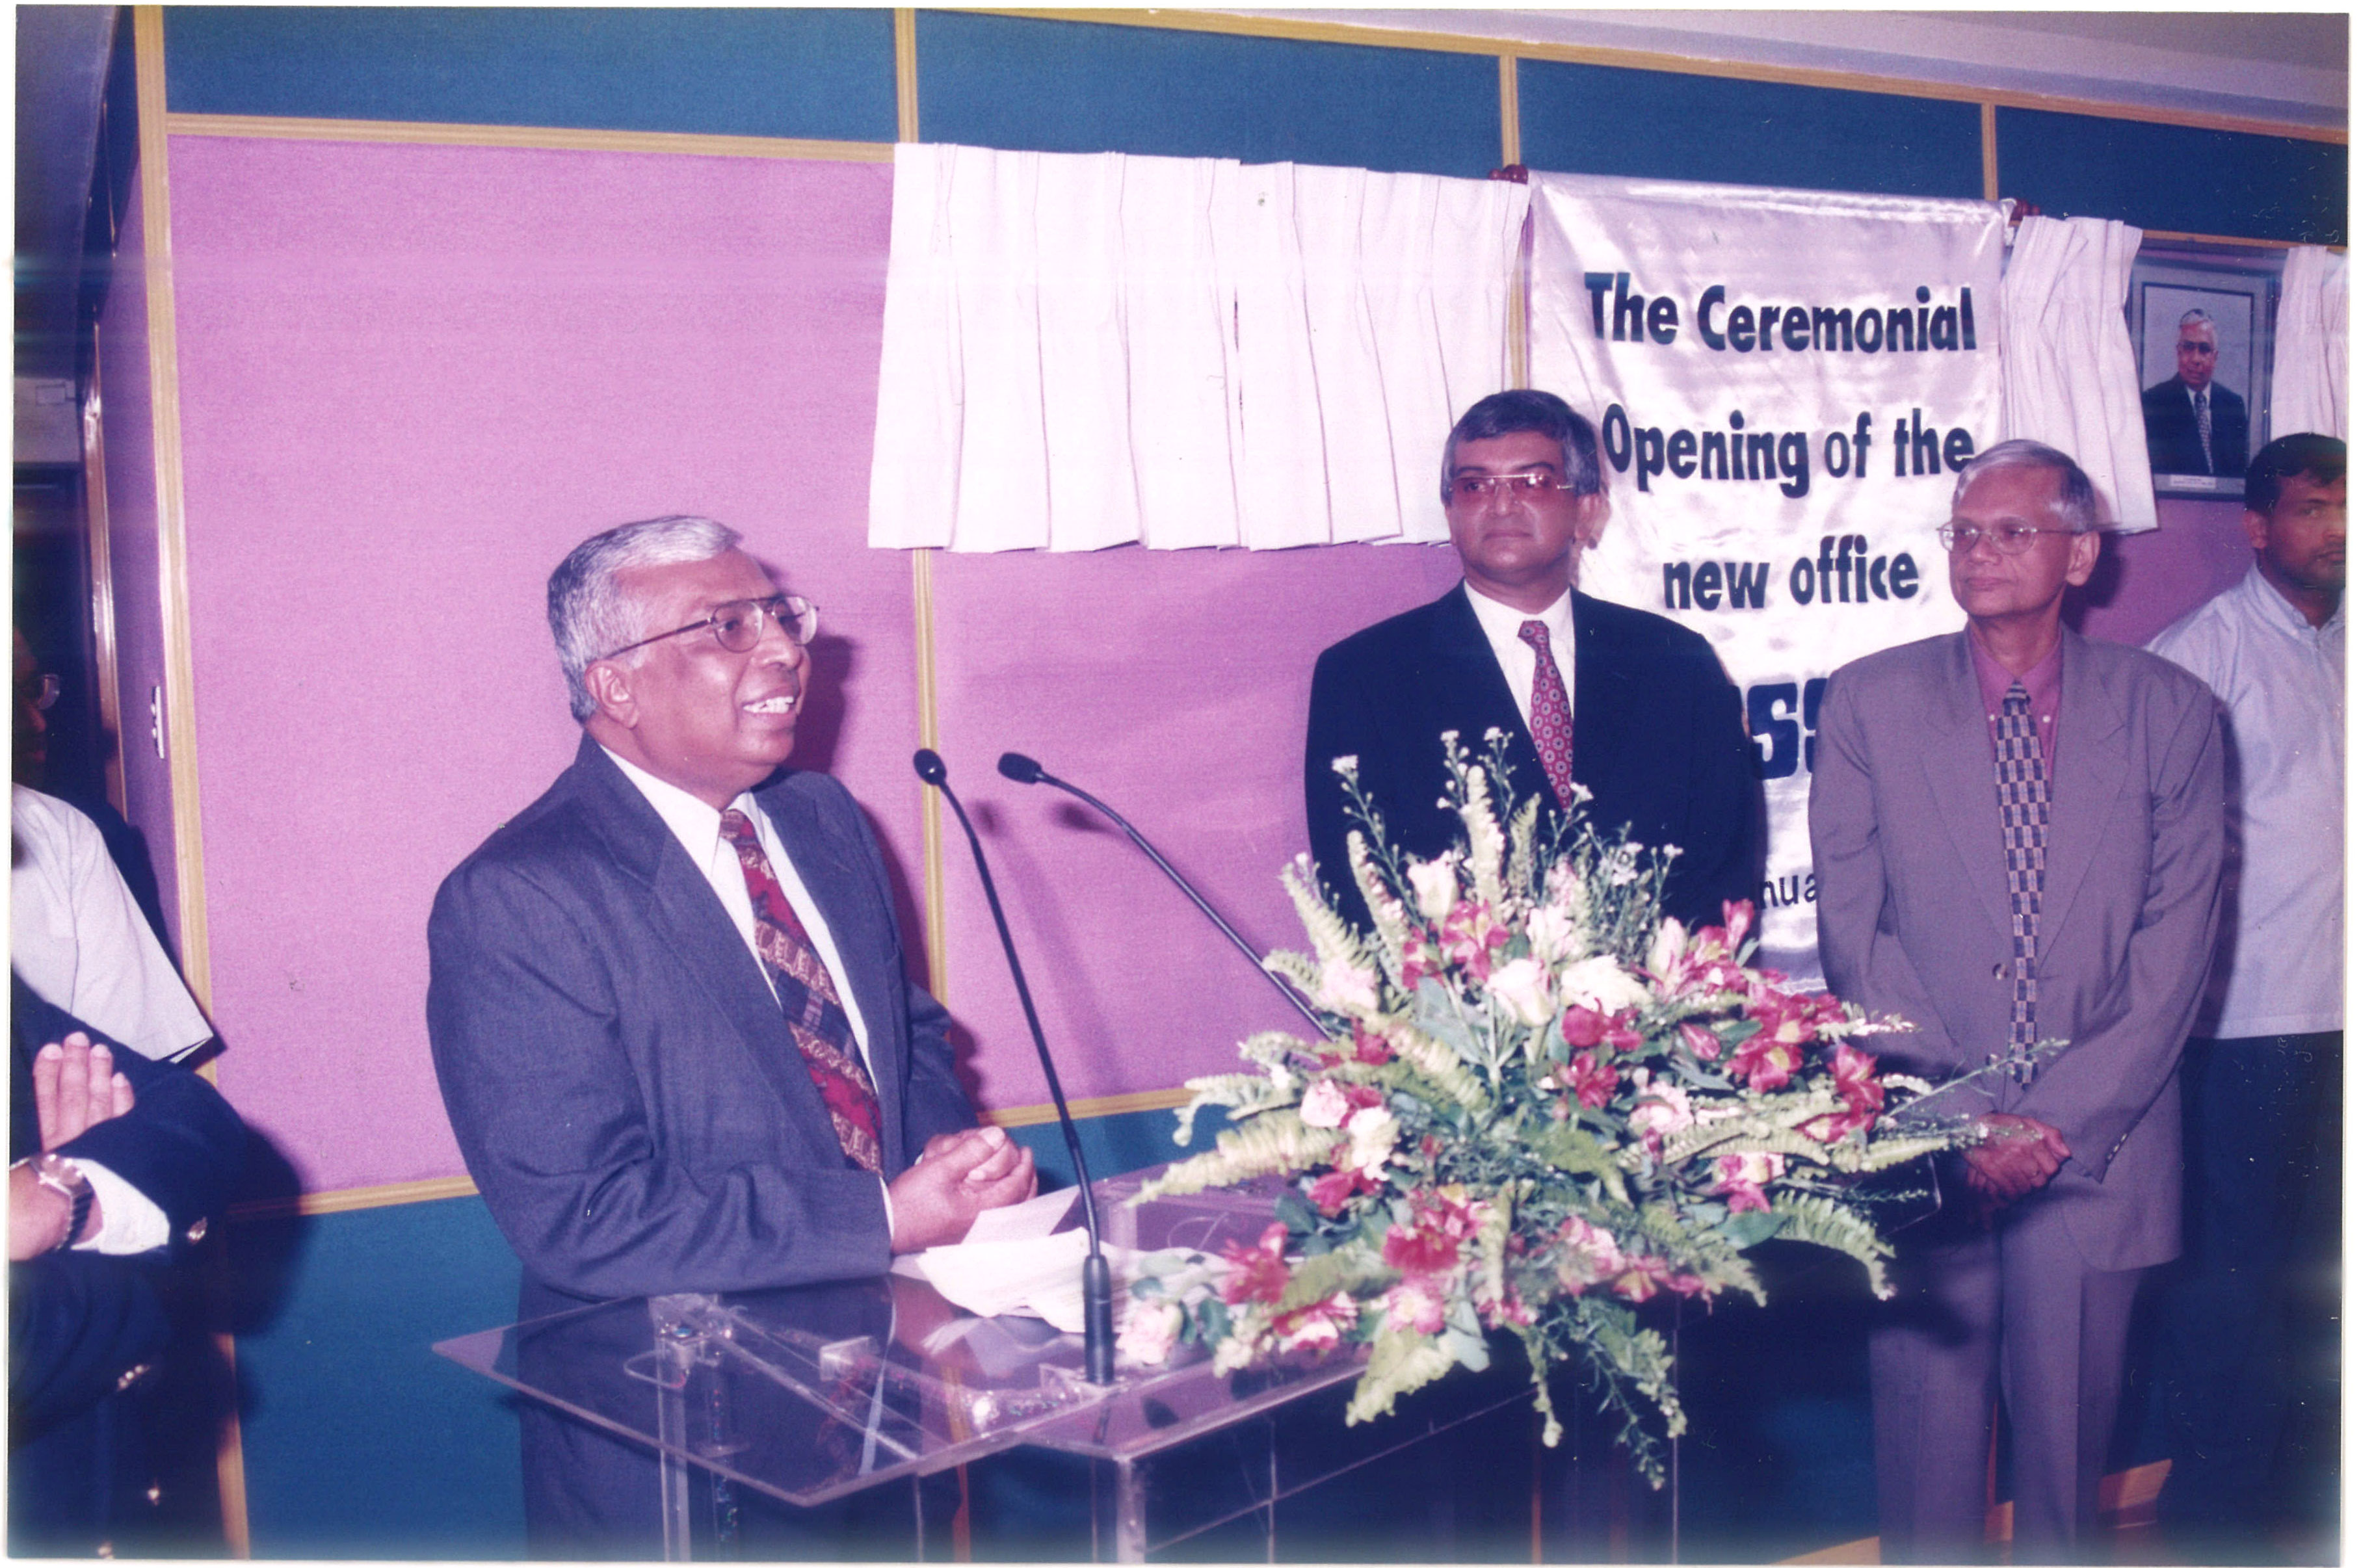 Dr. RB Ekanayake, Mr. Lal Chandranath, Prof. GL Peris